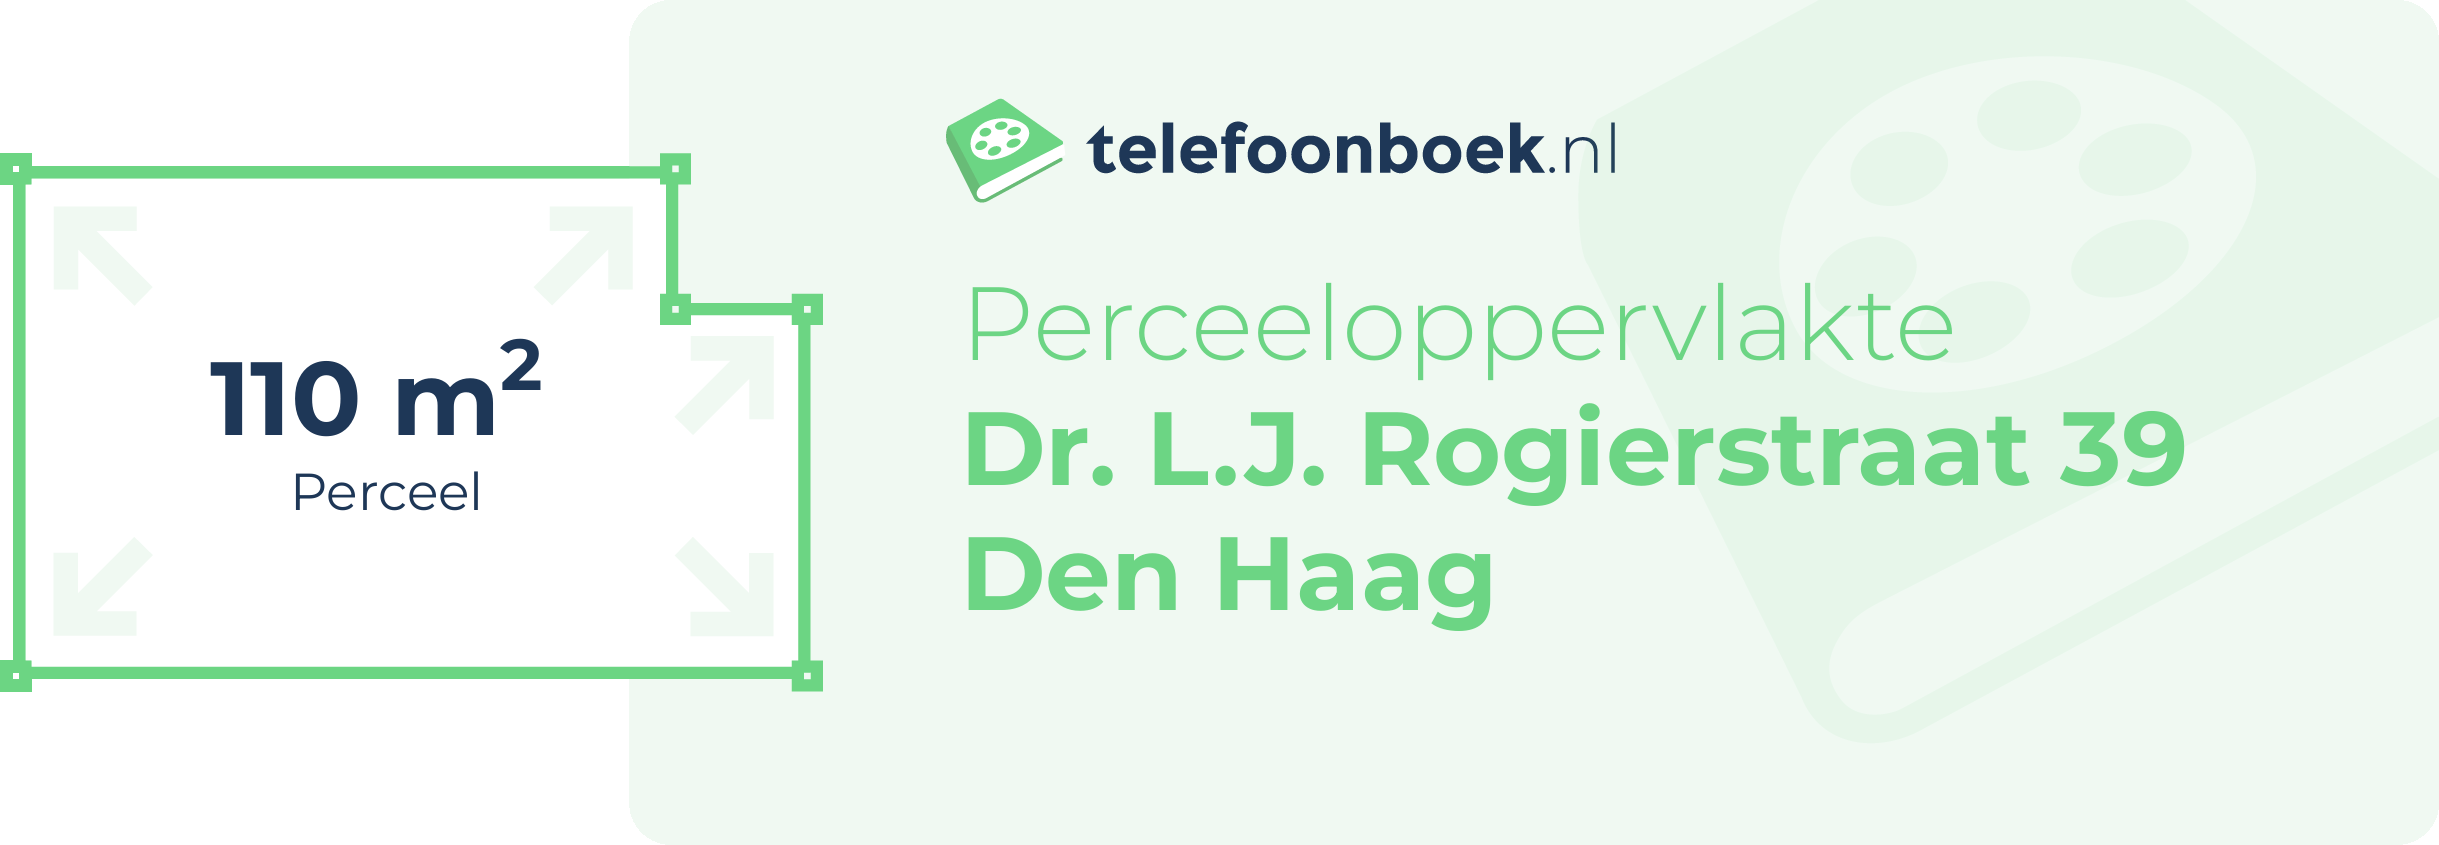 Perceeloppervlakte Dr. L.J. Rogierstraat 39 Den Haag